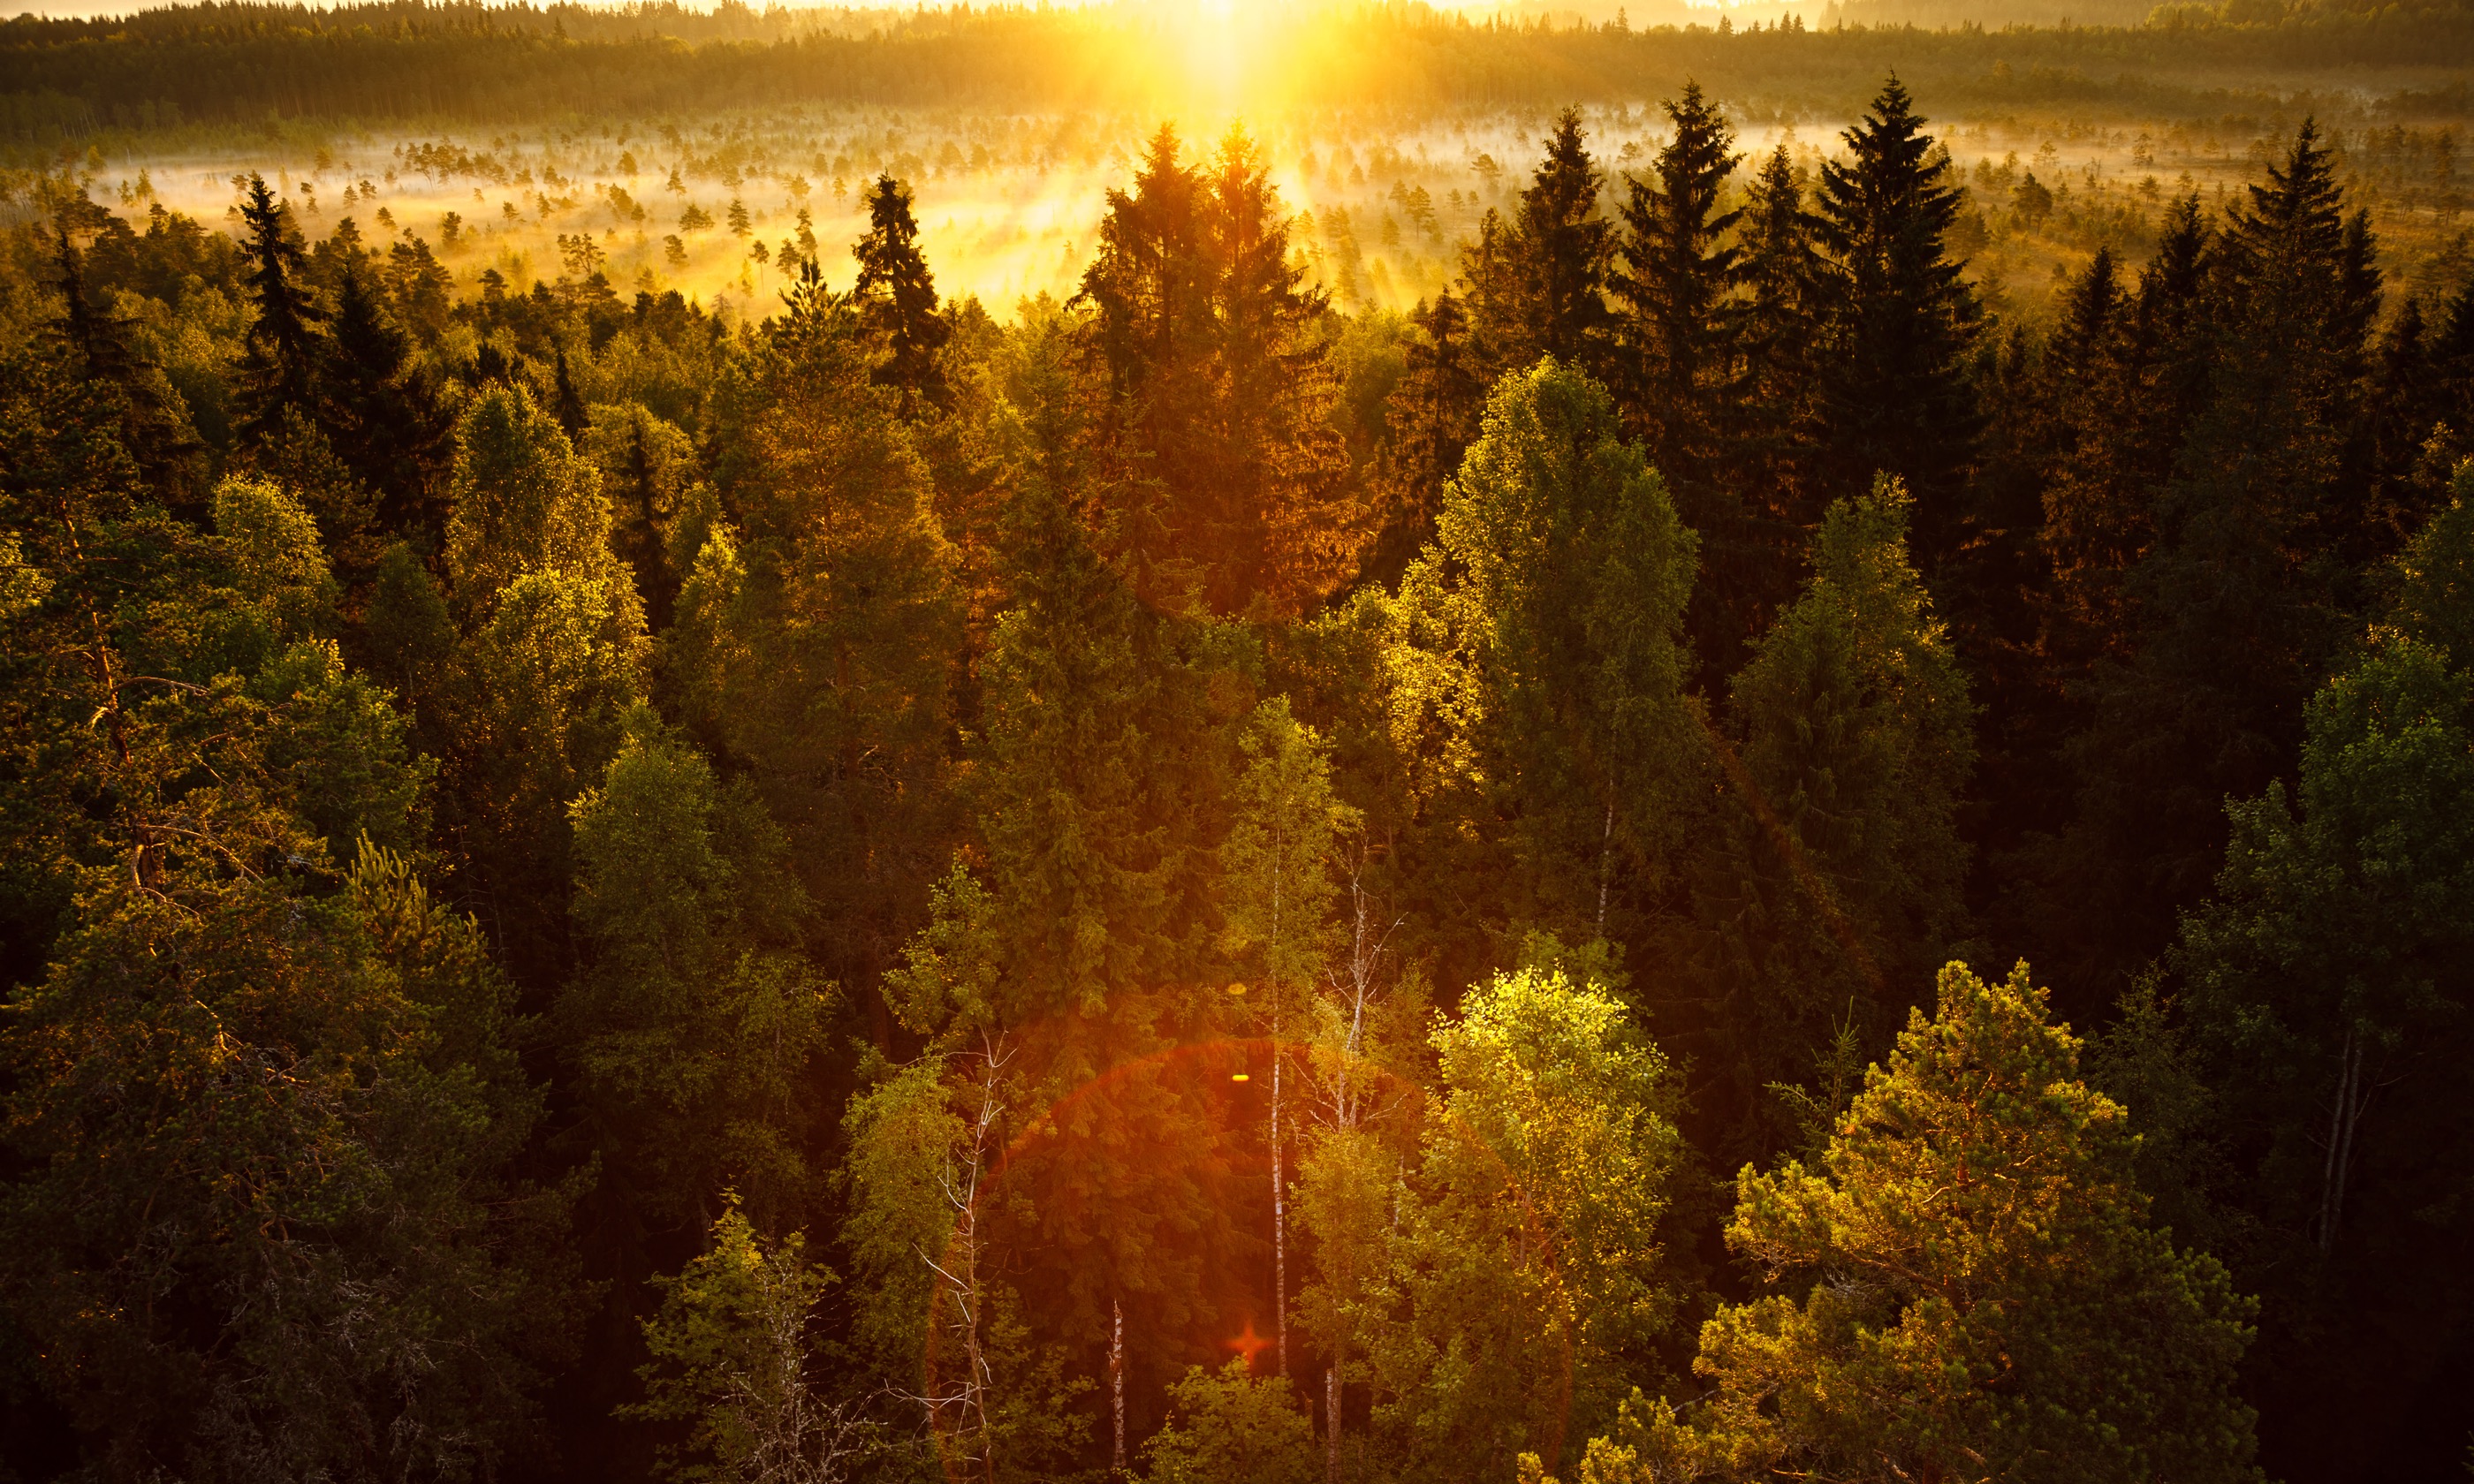 Autumnal forest (Shutterstock.com)